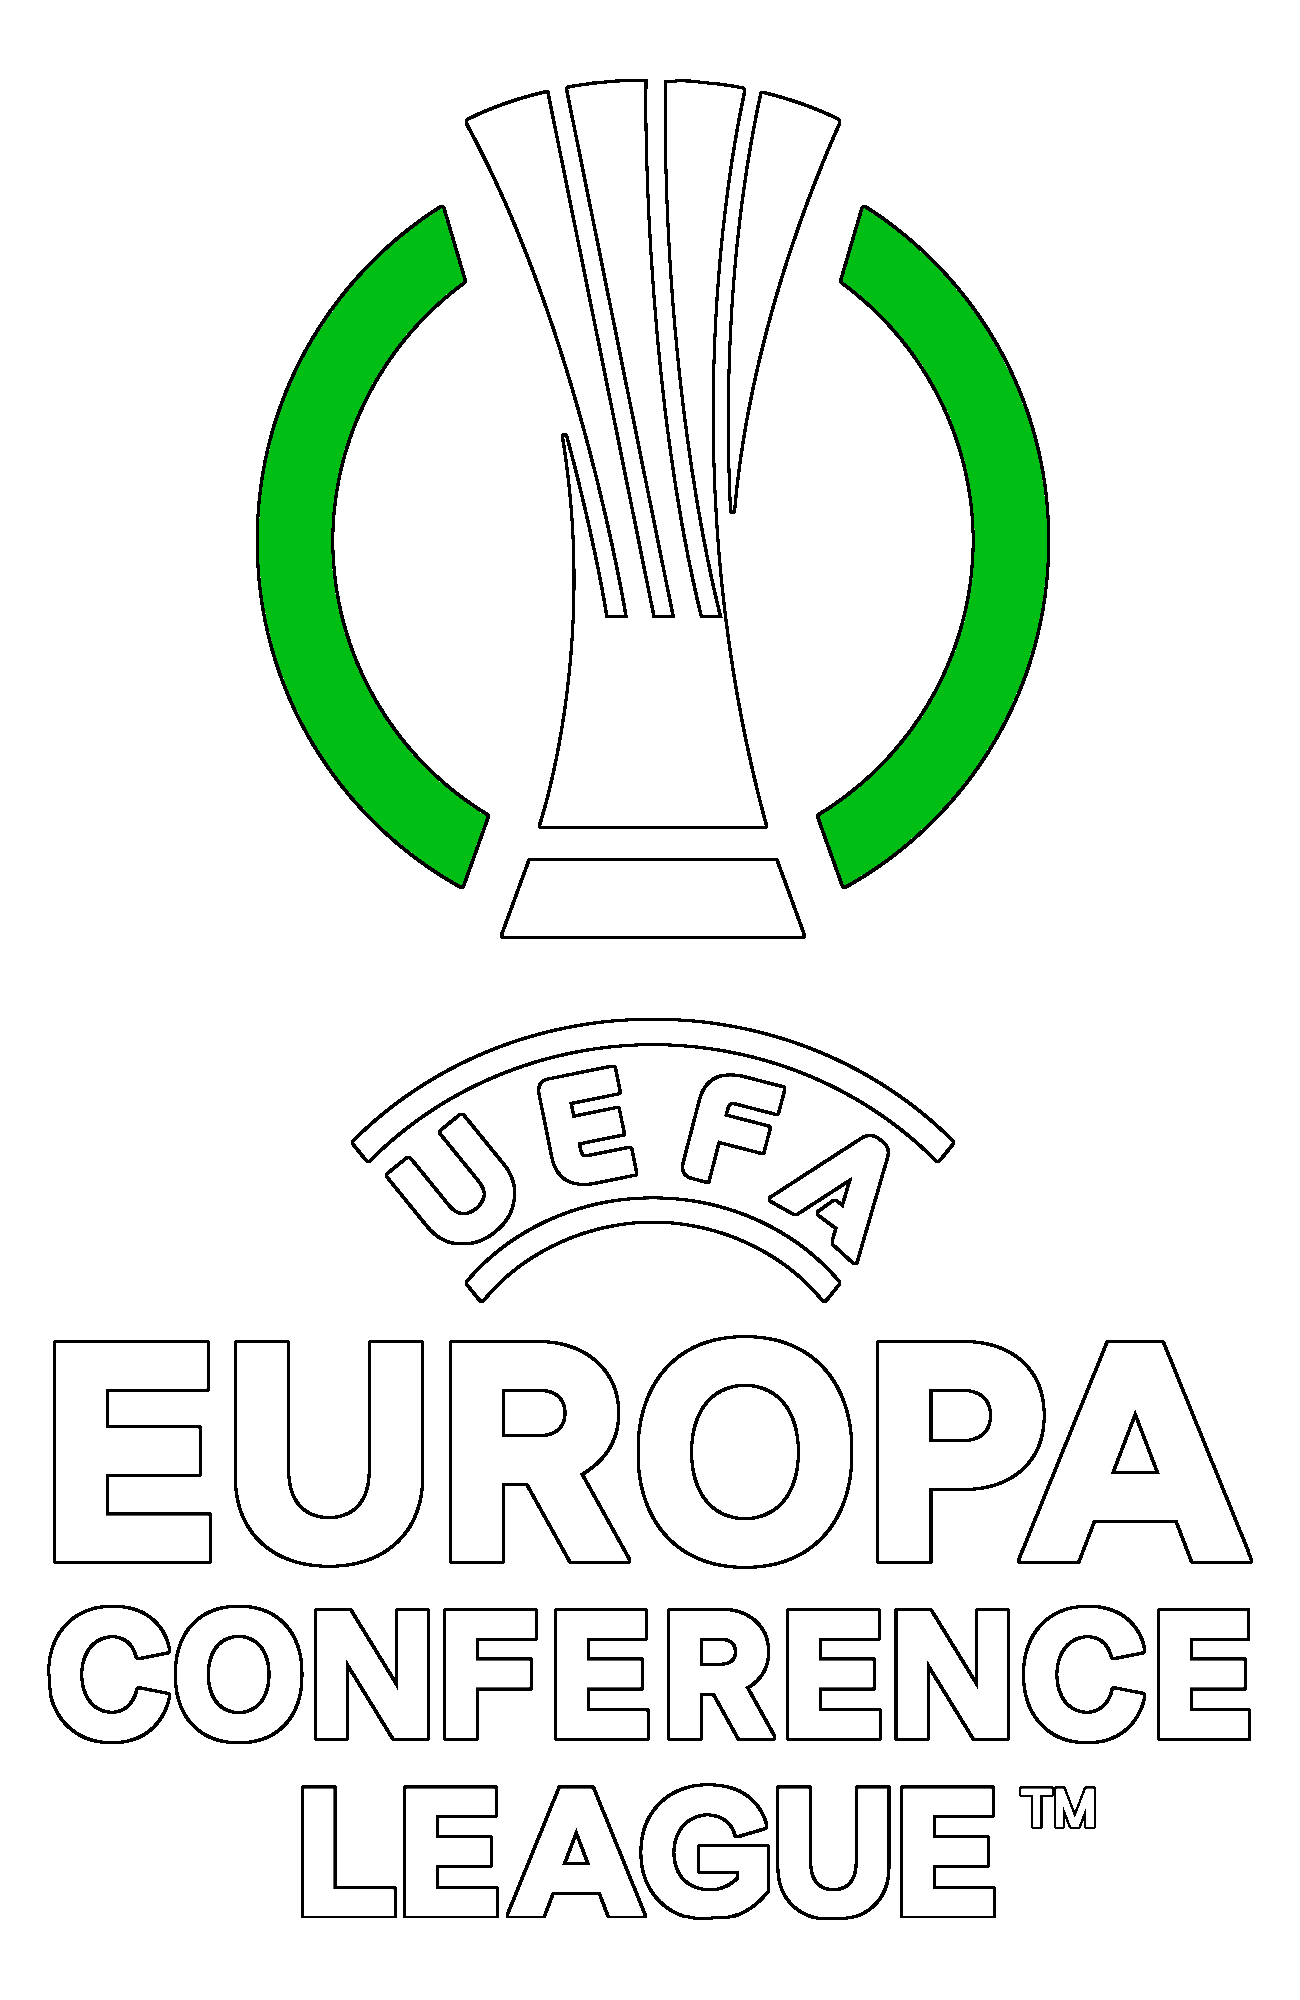 Europa Conference League : Calendario, statistiche e risultati | Calcio.com